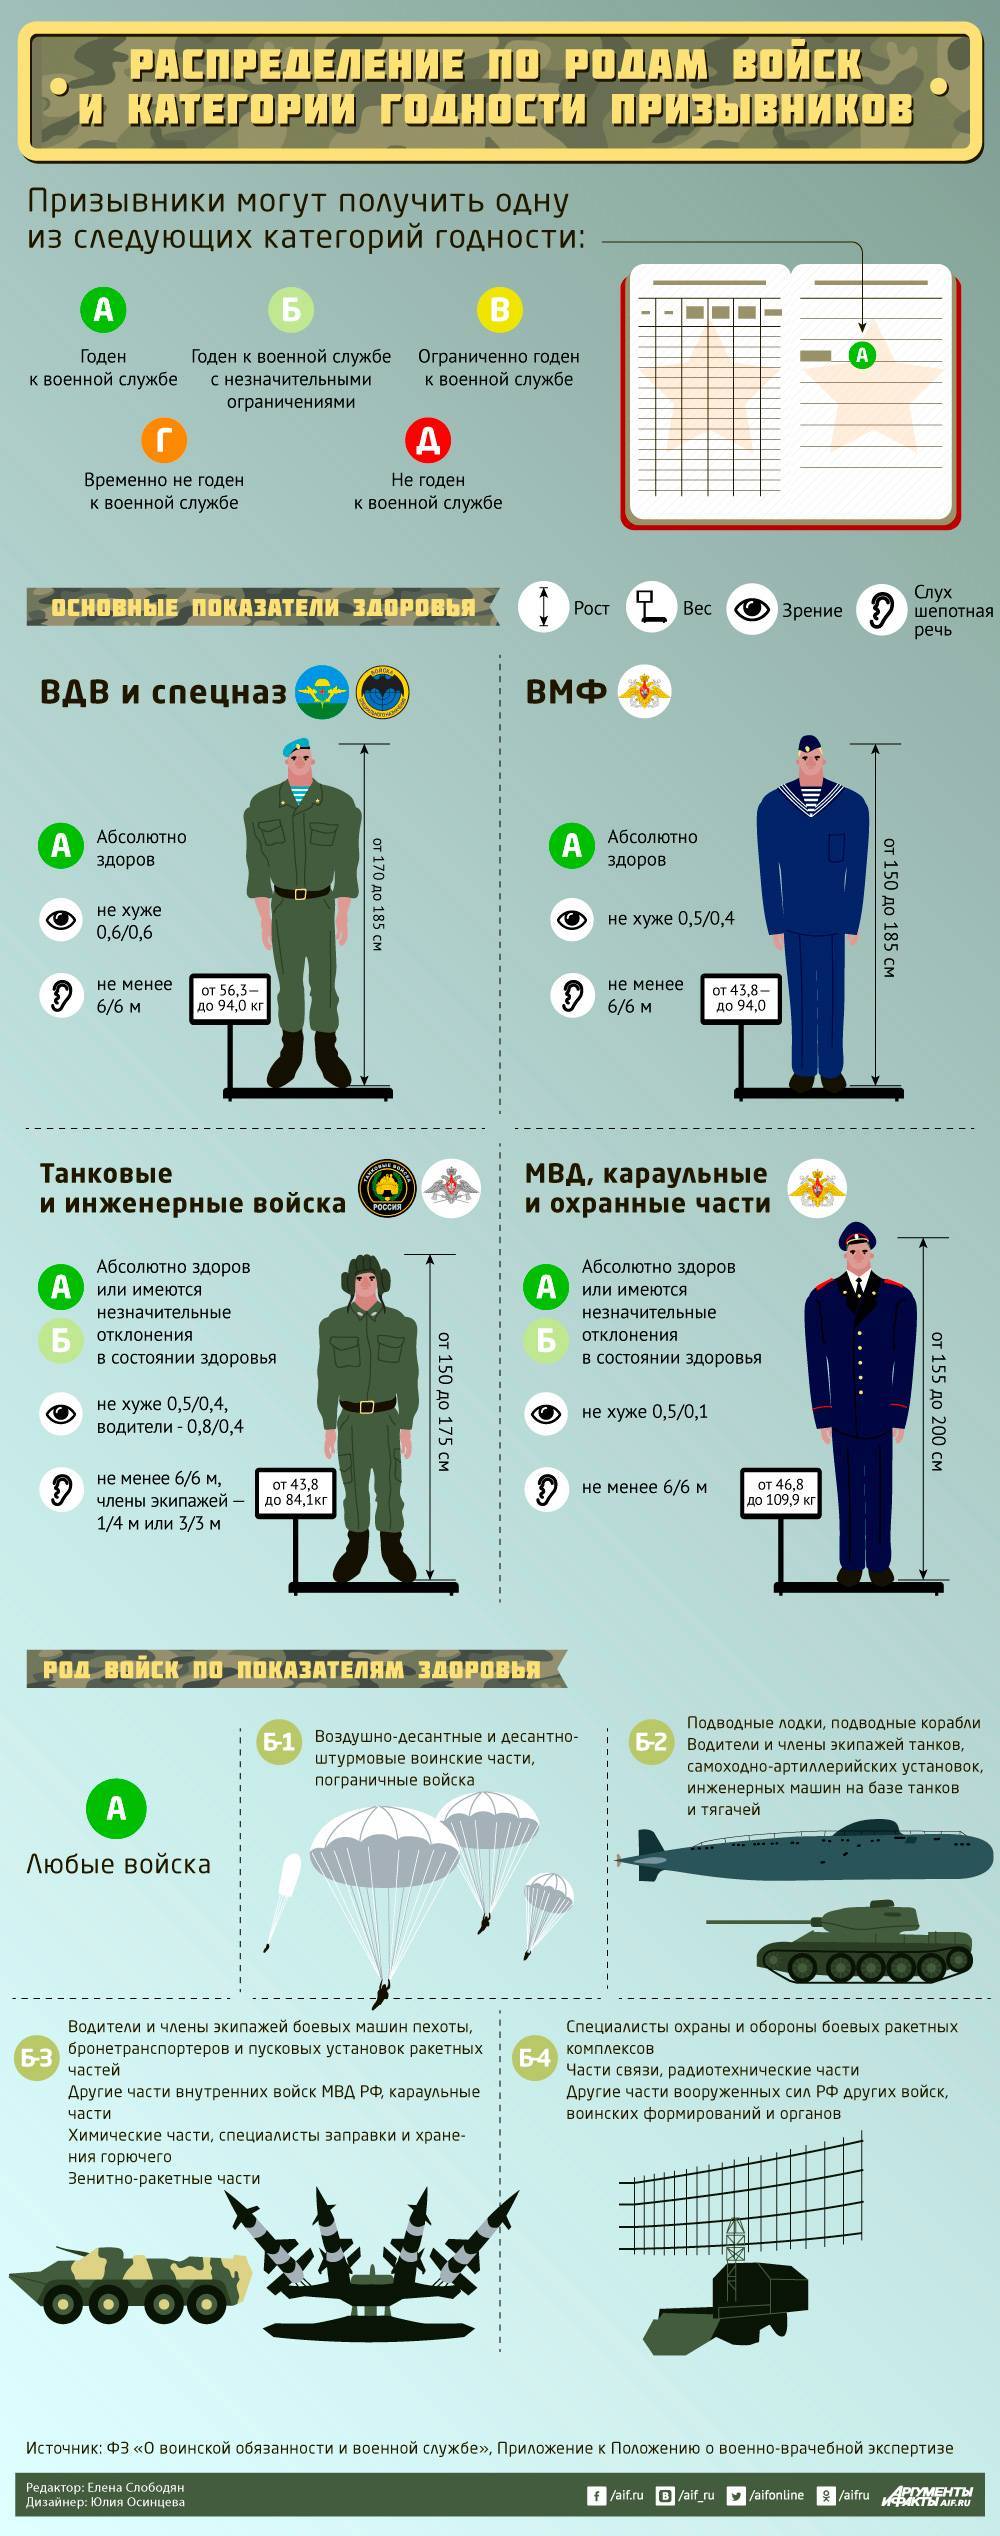 Срок службы в армии